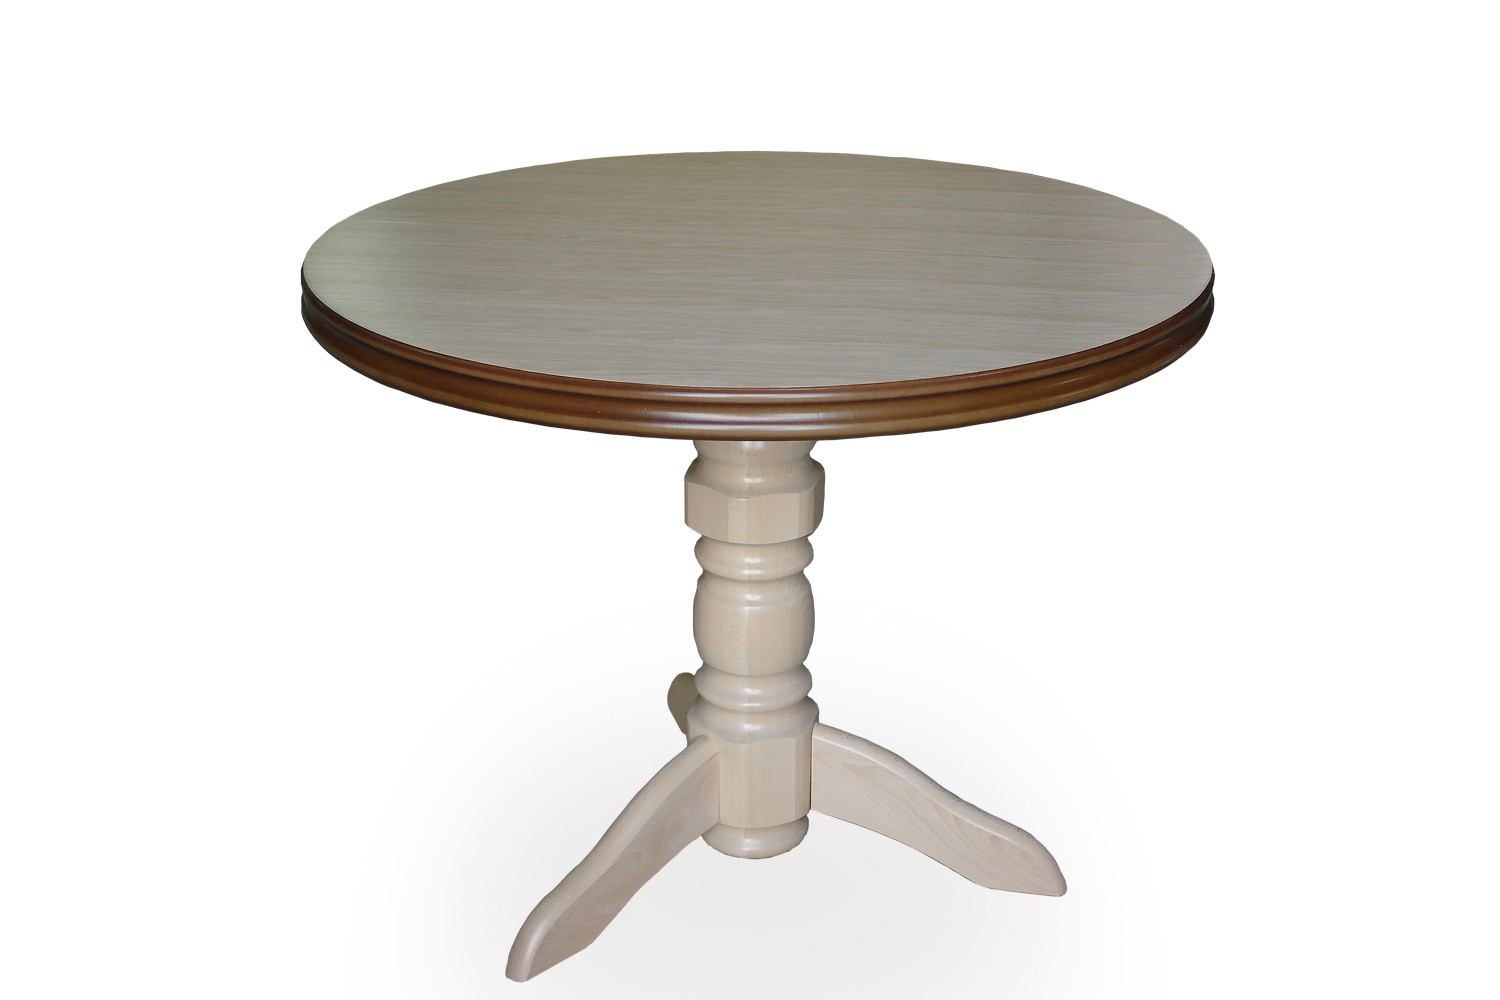 רהיטים מעץ מלא, ריהוט מעץ מלא, ריהוט מעץ, שולחן אוכל עגול, שולחן אוכל מעוגל, стол обеденный круглый, 